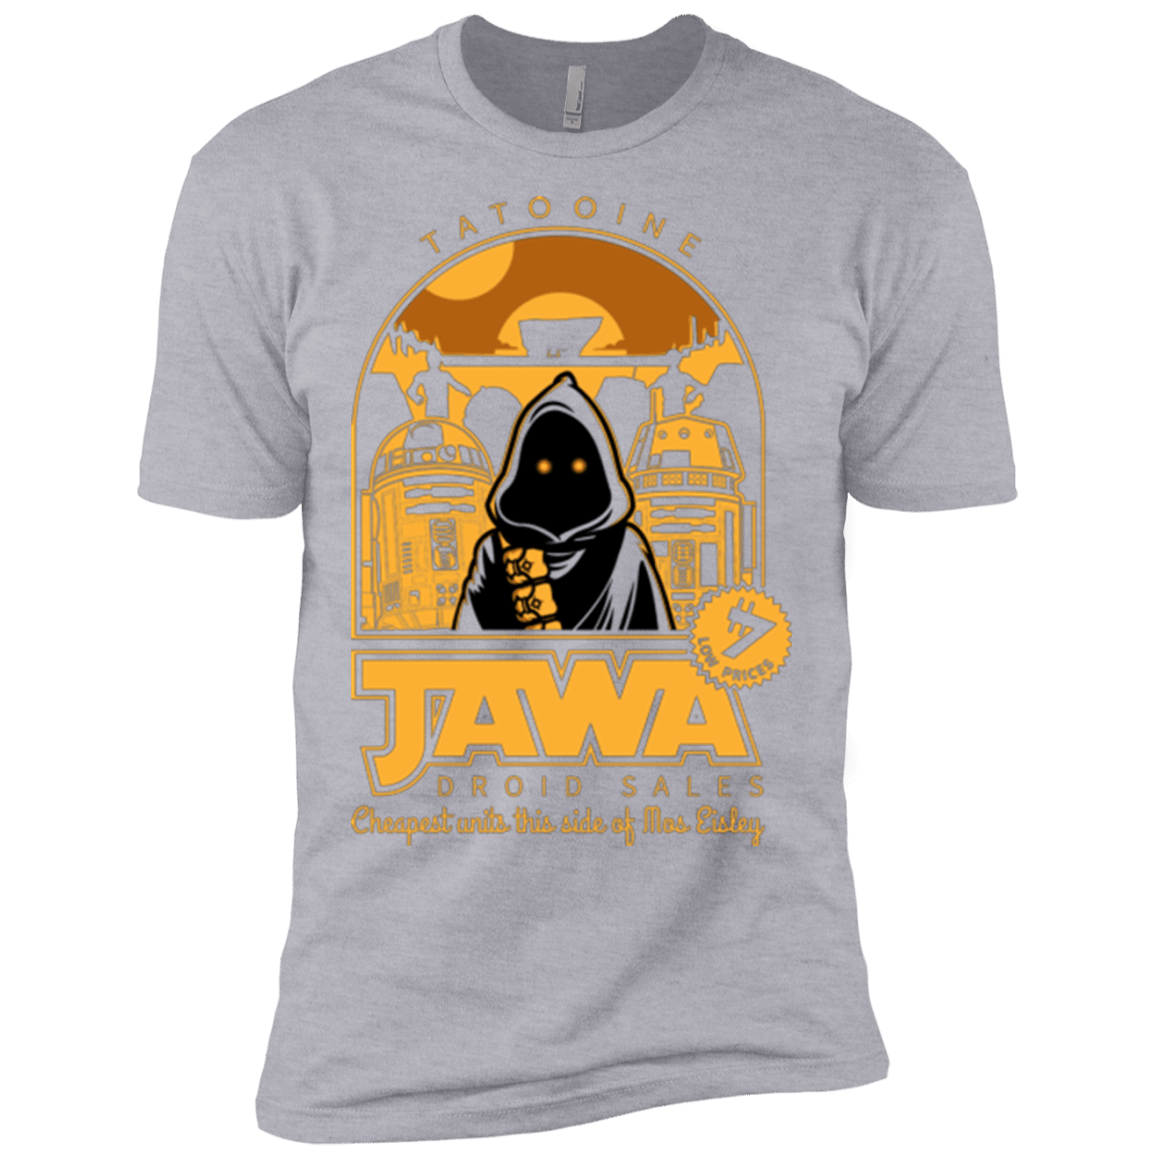 T-Shirts Heather Grey / X-Small Jawa Droid Sales Men's Premium T-Shirt